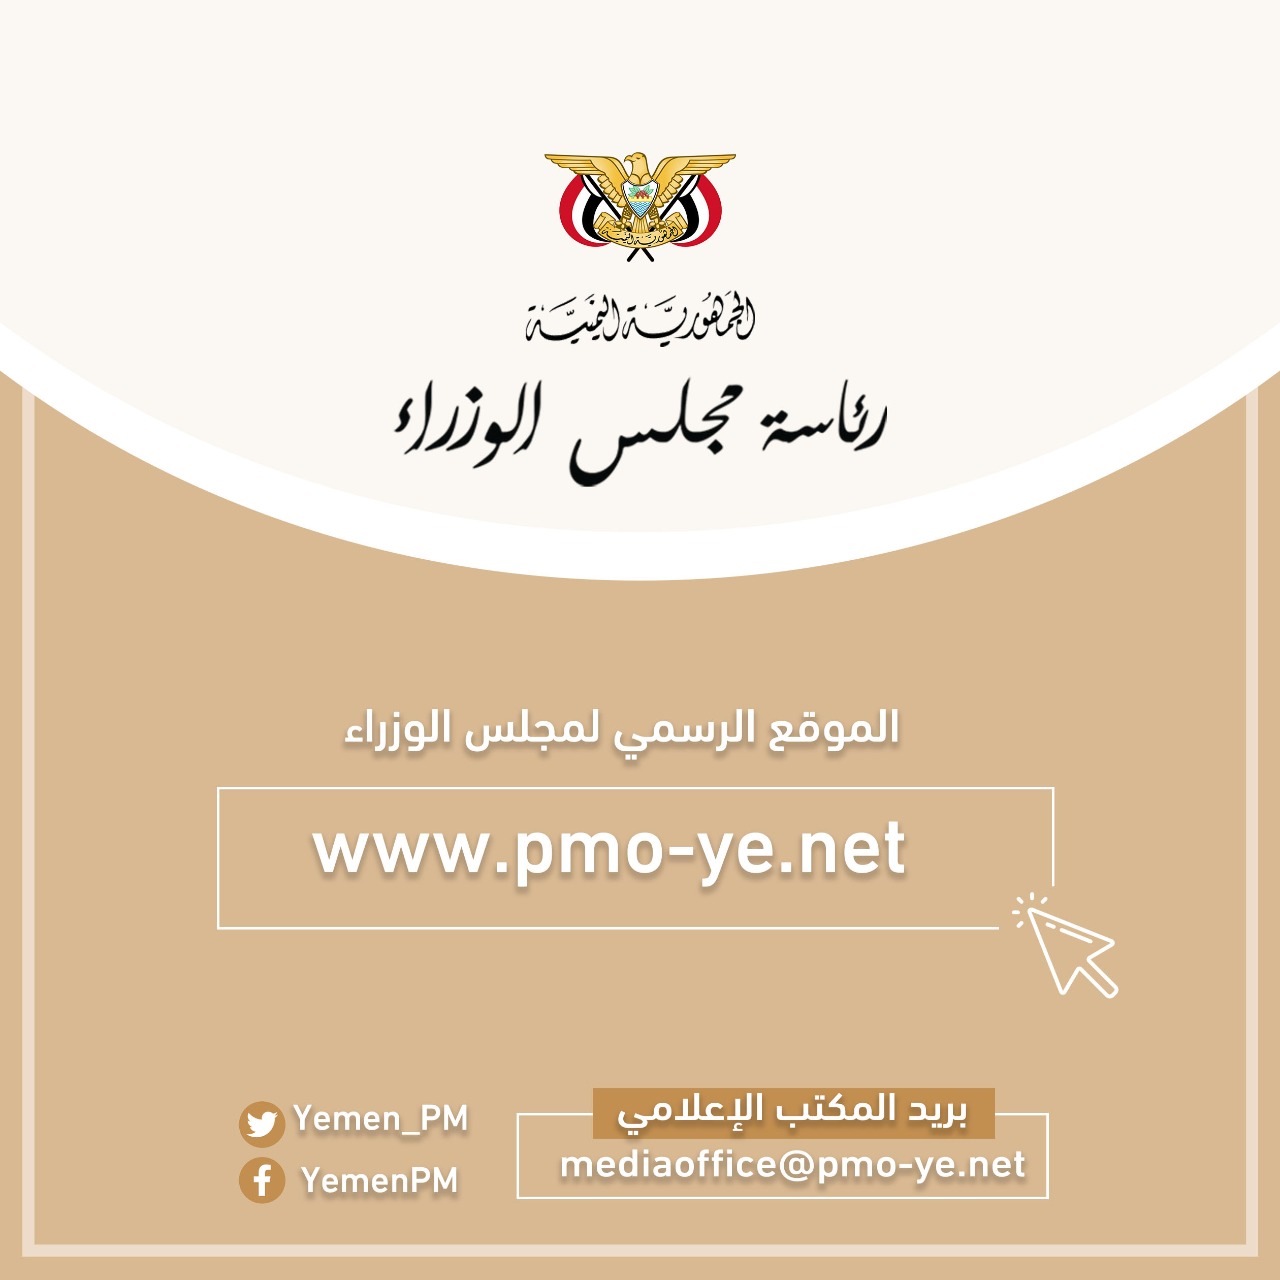 رئاسة مجلس الوزراء تدشن موقعها الرسمي على شبكة الانترنت